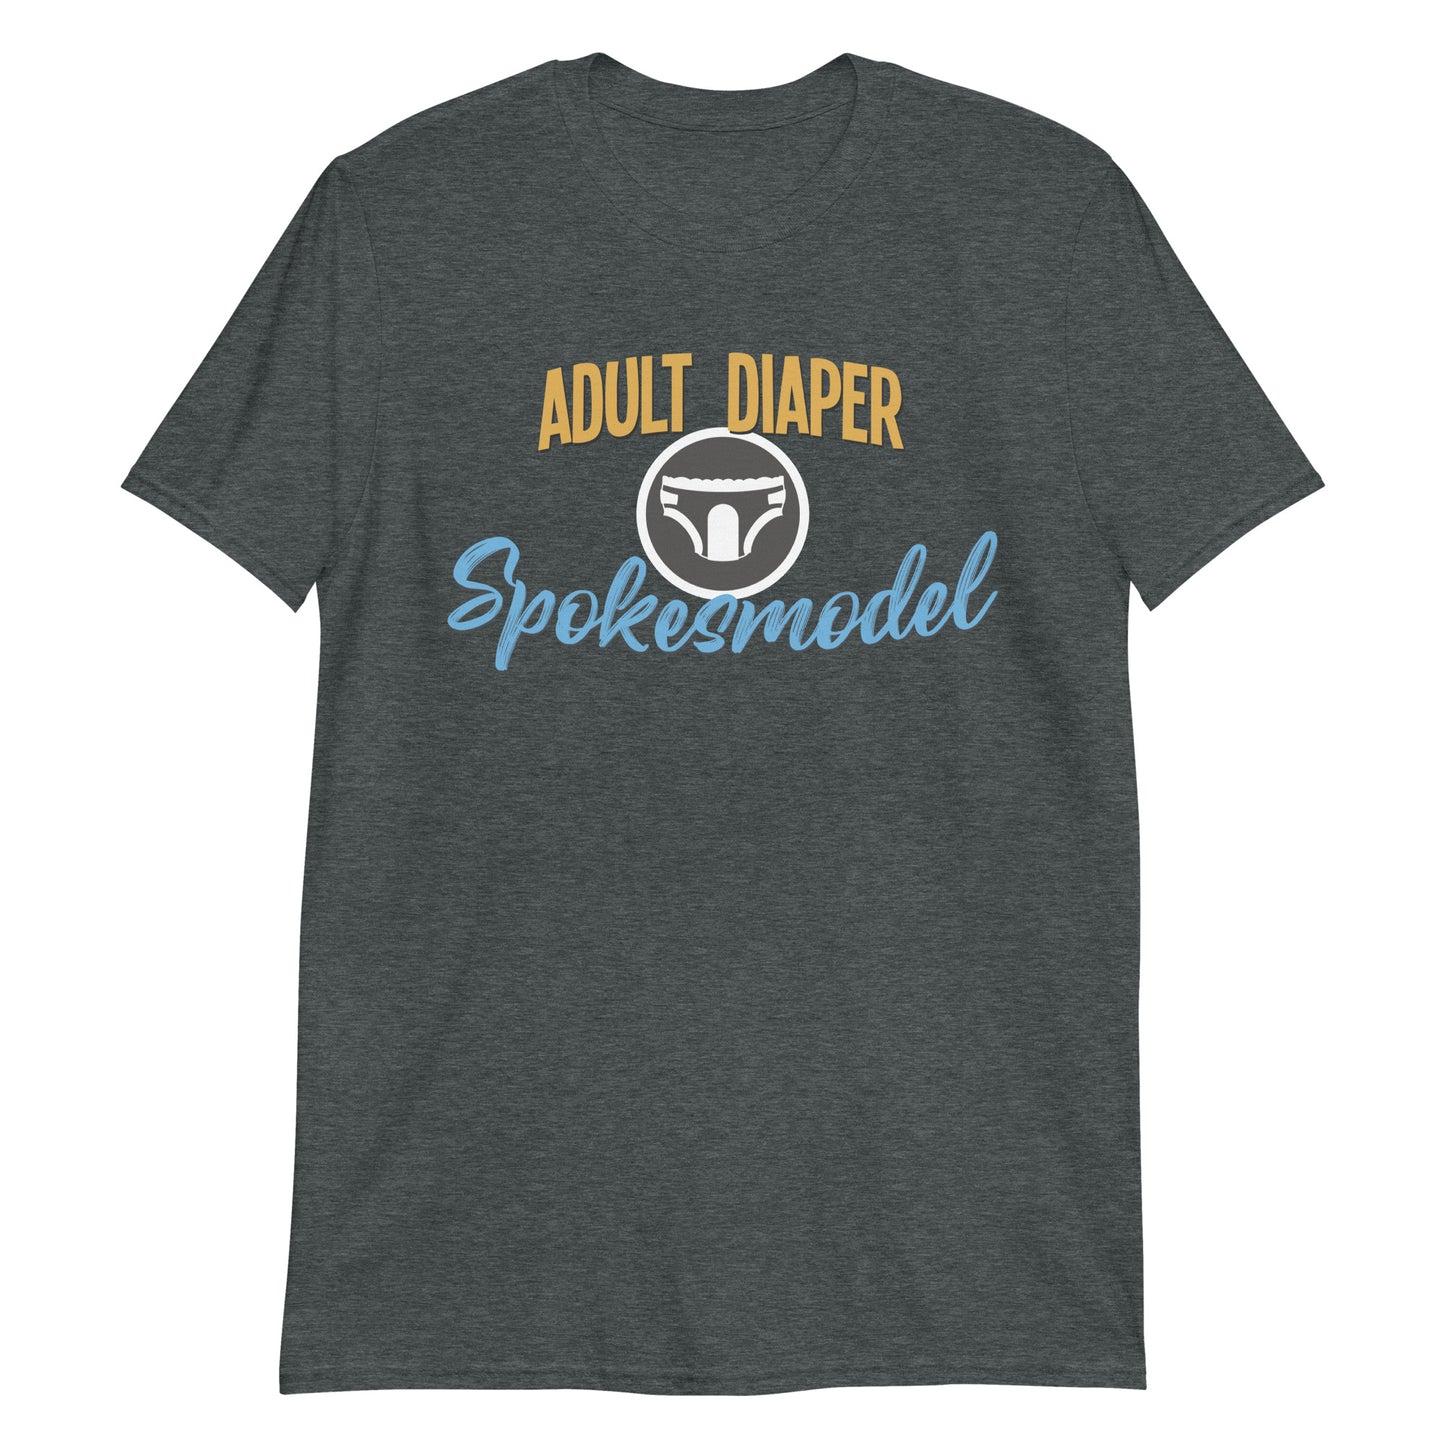 Adult Diaper Spokesmodel 2 Short-Sleeve Unisex T-Shirt